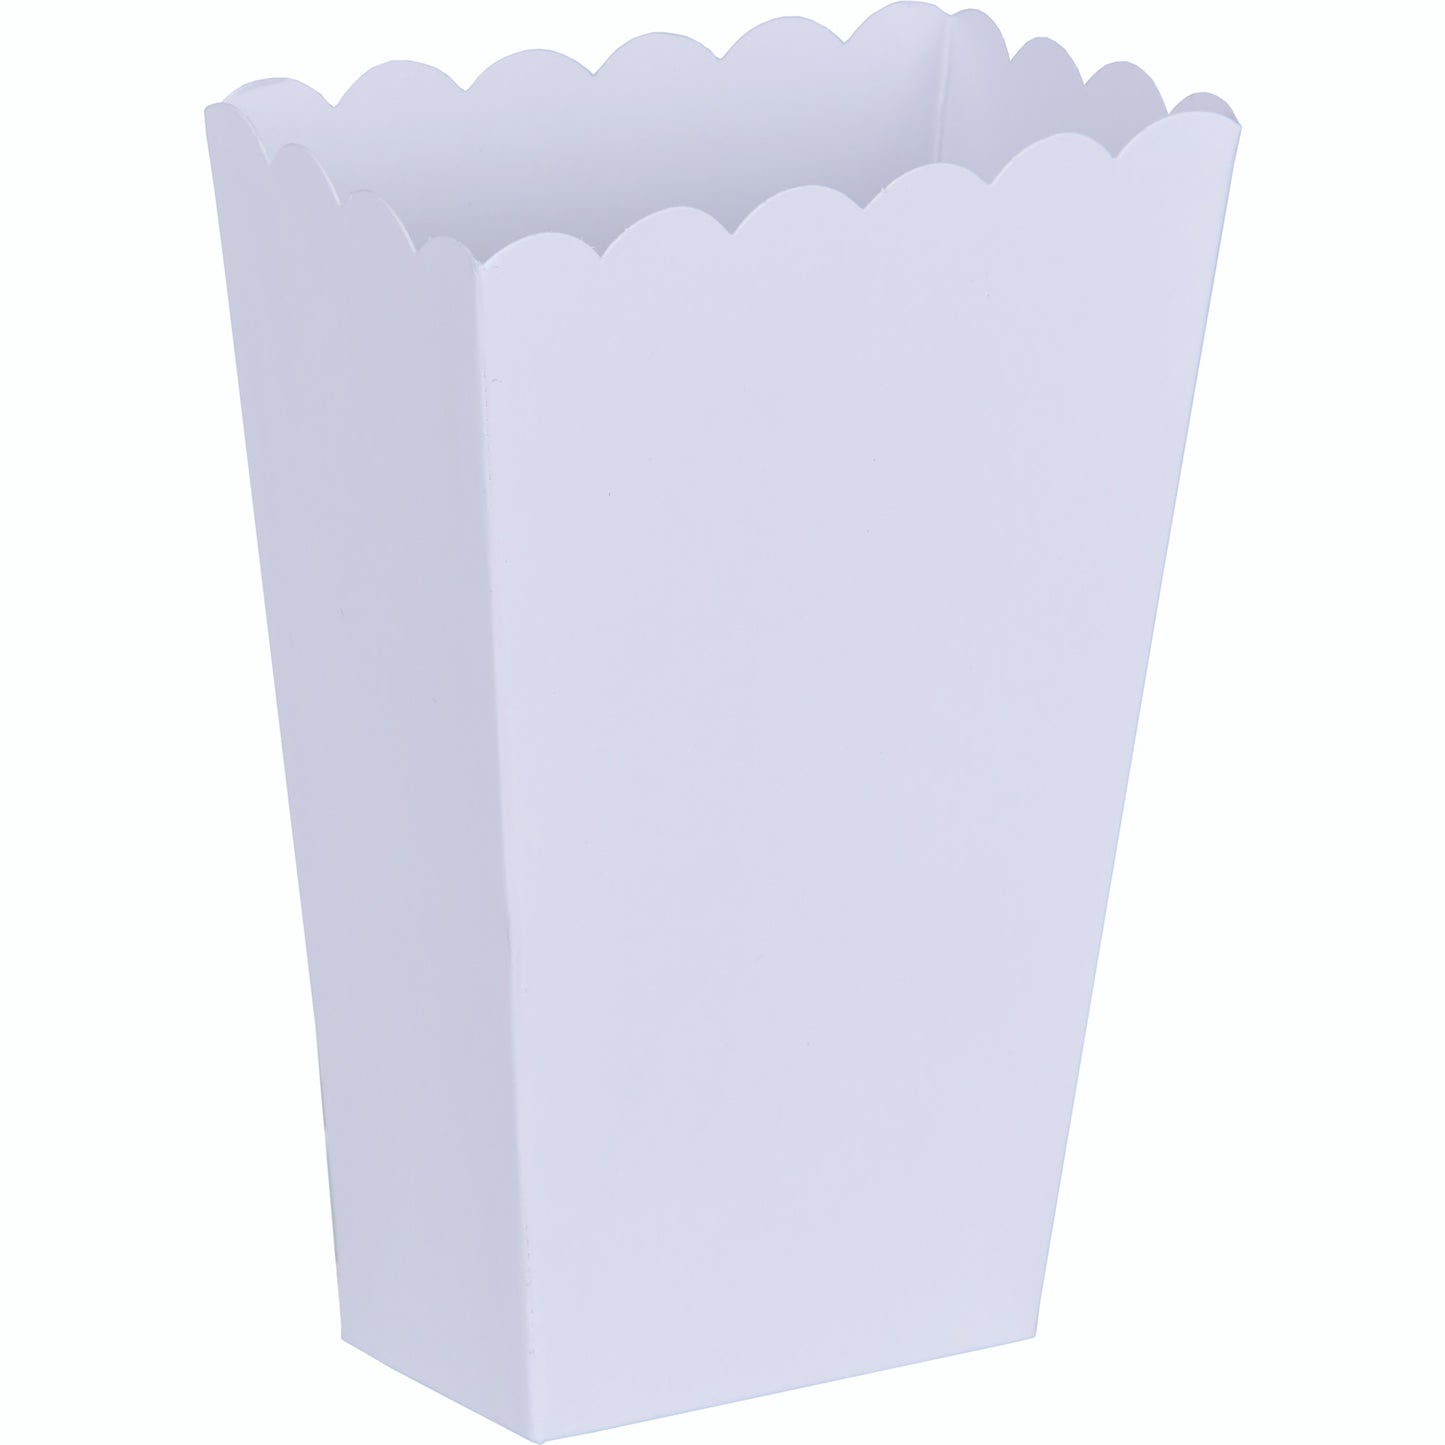 Popcorn Favor Boxes Small White